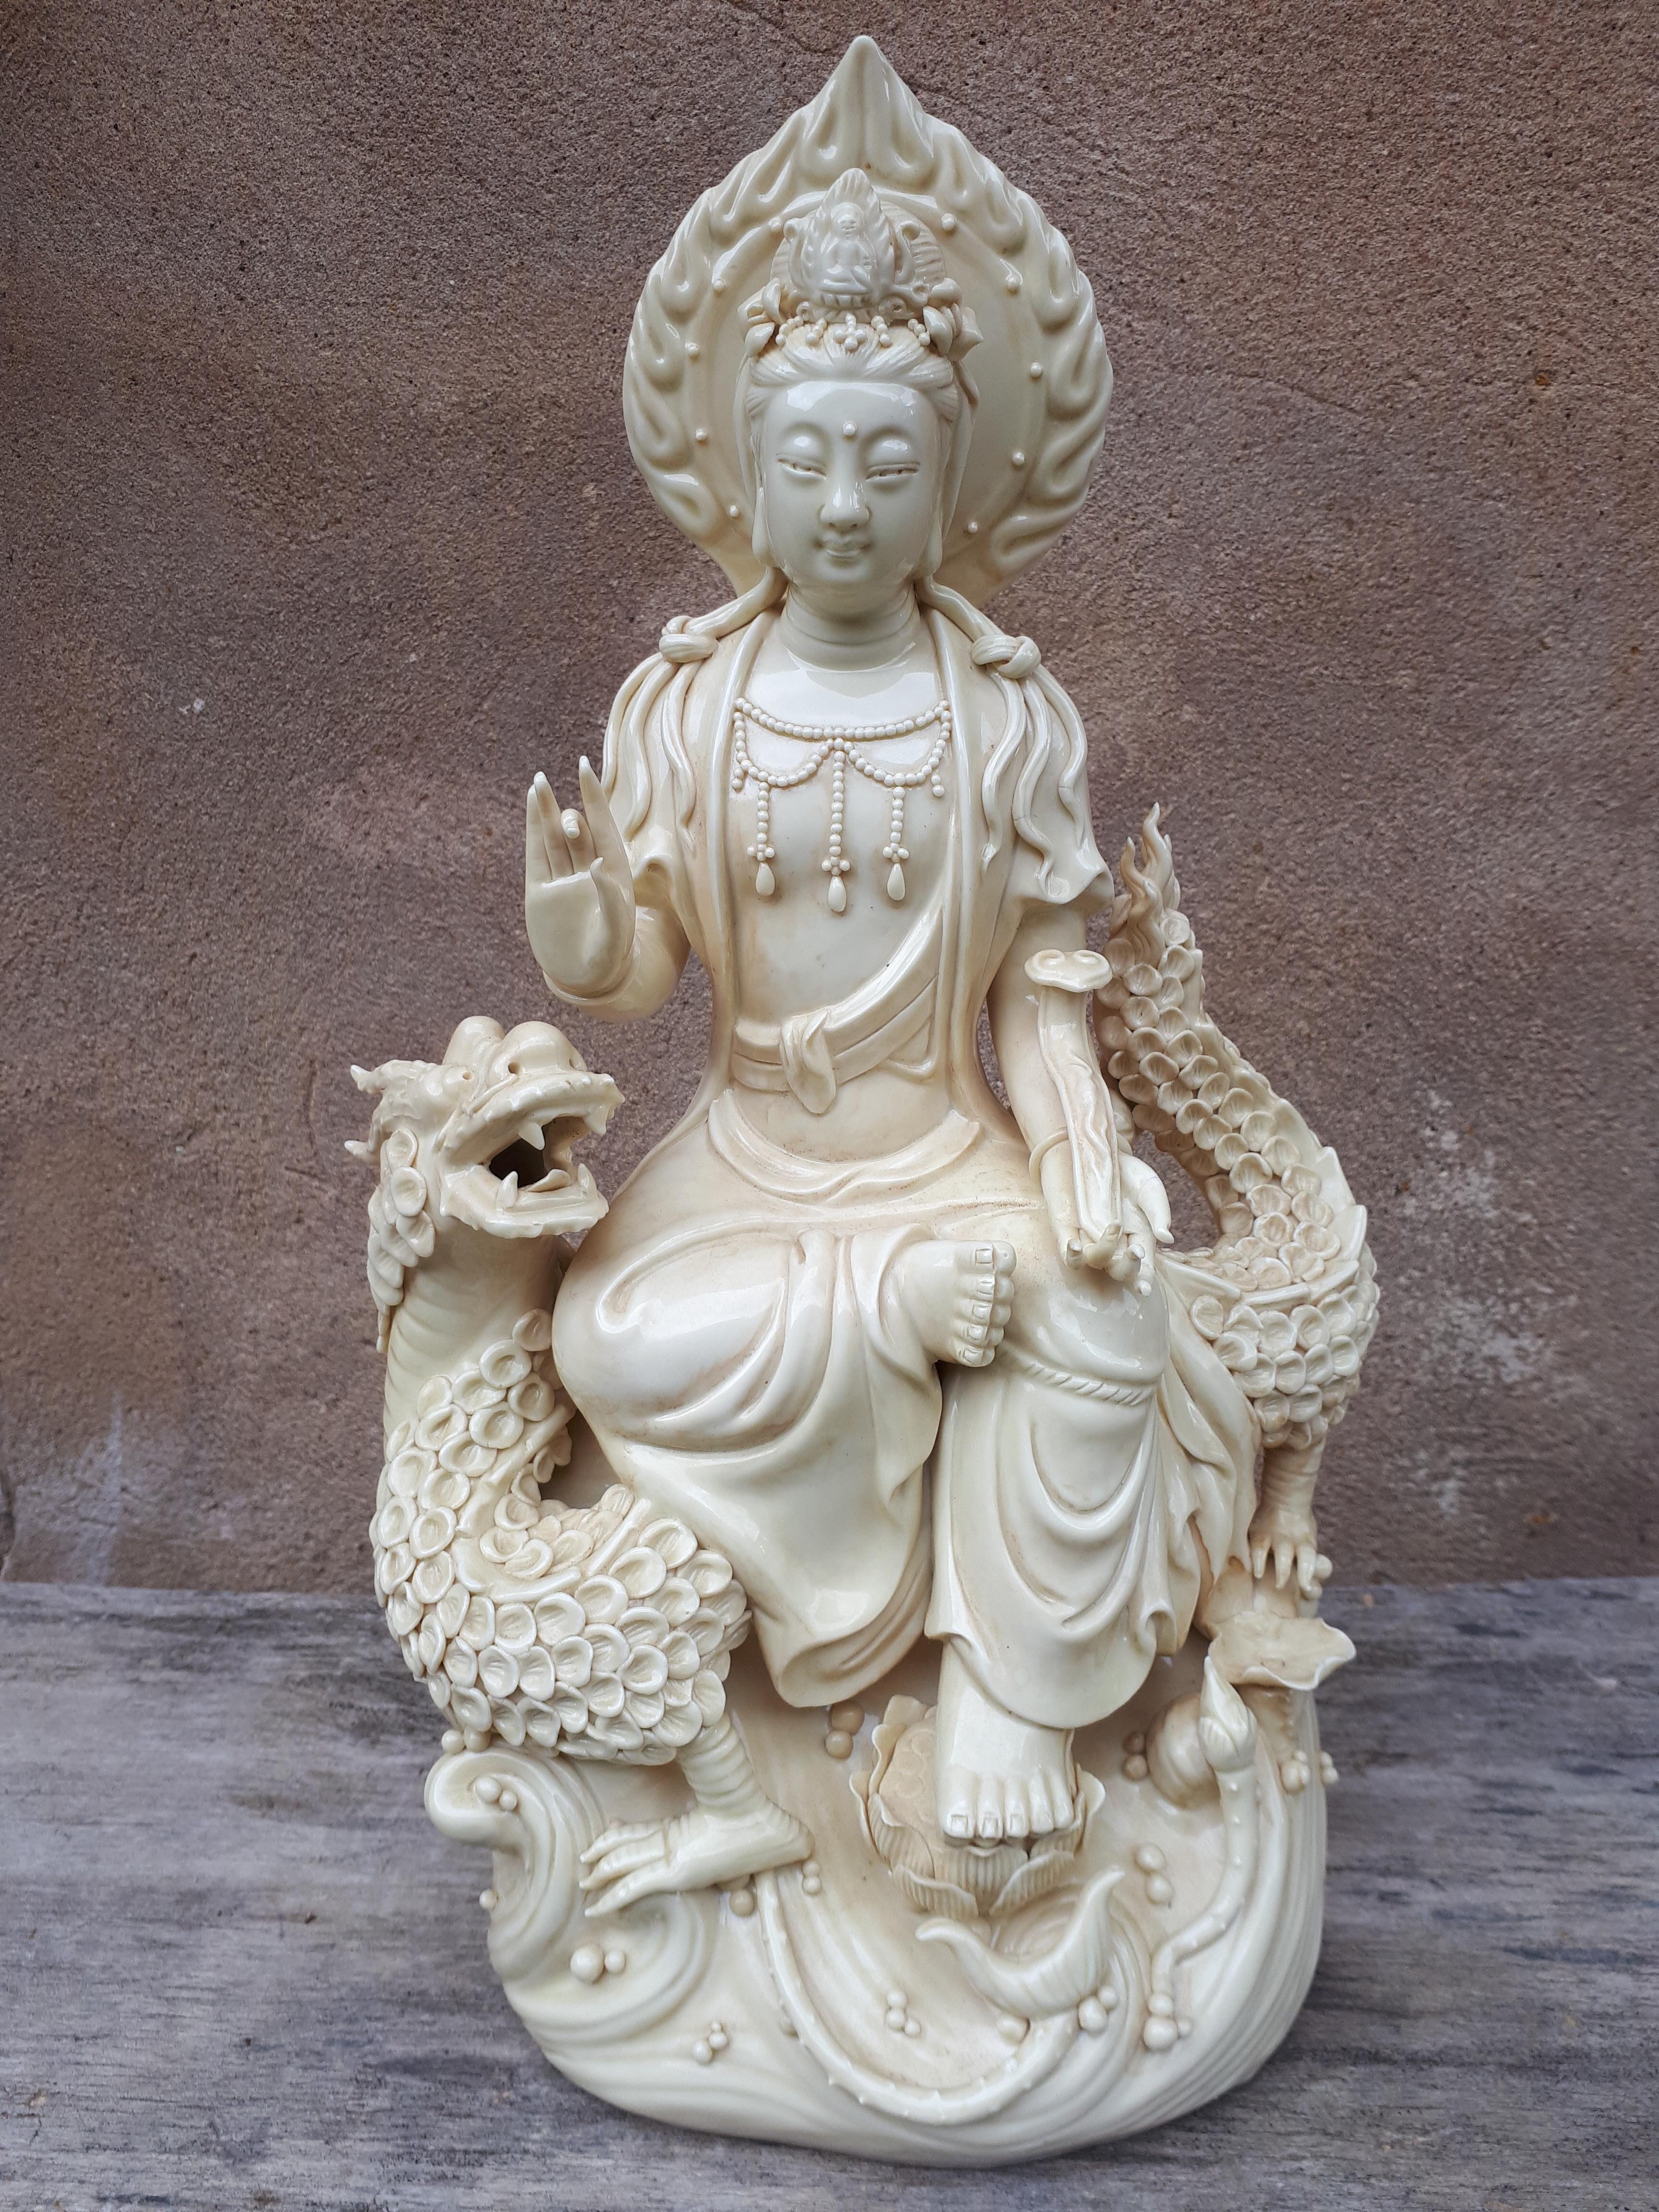 Porzellanstatue von Guanyin, dargestellt in einer königlichen Liegeposition auf einem Drachen, der ein Zepter in der linken Hand hält.
Die auf die linke Hand geklebten Finger beeinträchtigen die Ästhetik des Ganzen nicht und sind zudem in einer